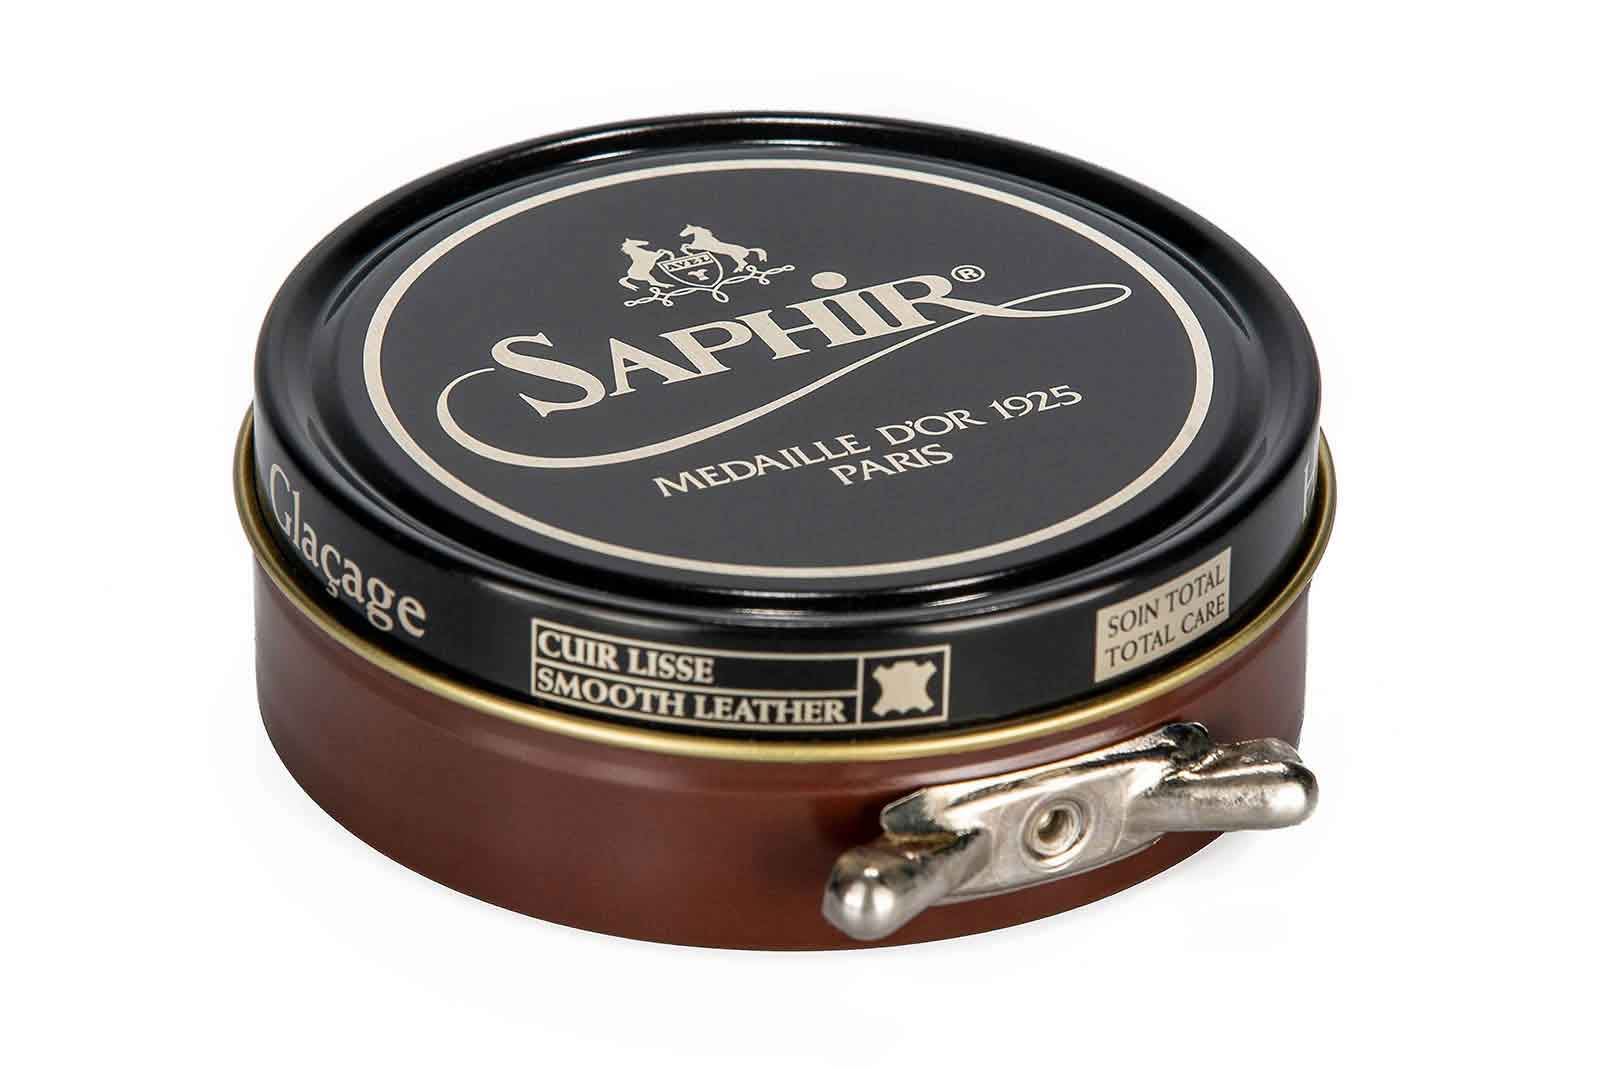 Saphir Beauté du Cuir Crème Surfine Shoe Cream 50ml - Quality Shop